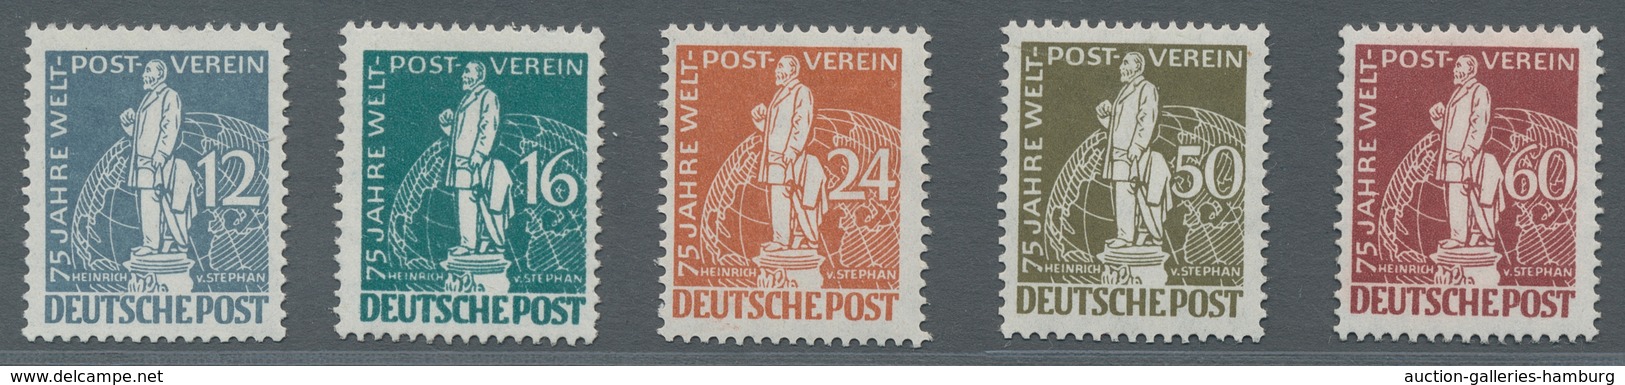 Berlin: 1949, Weltpostverein, Zwei Postfrische Sätze, Einwandfrei, Farbfrisch, Mi. 1500,00 - Nuevos